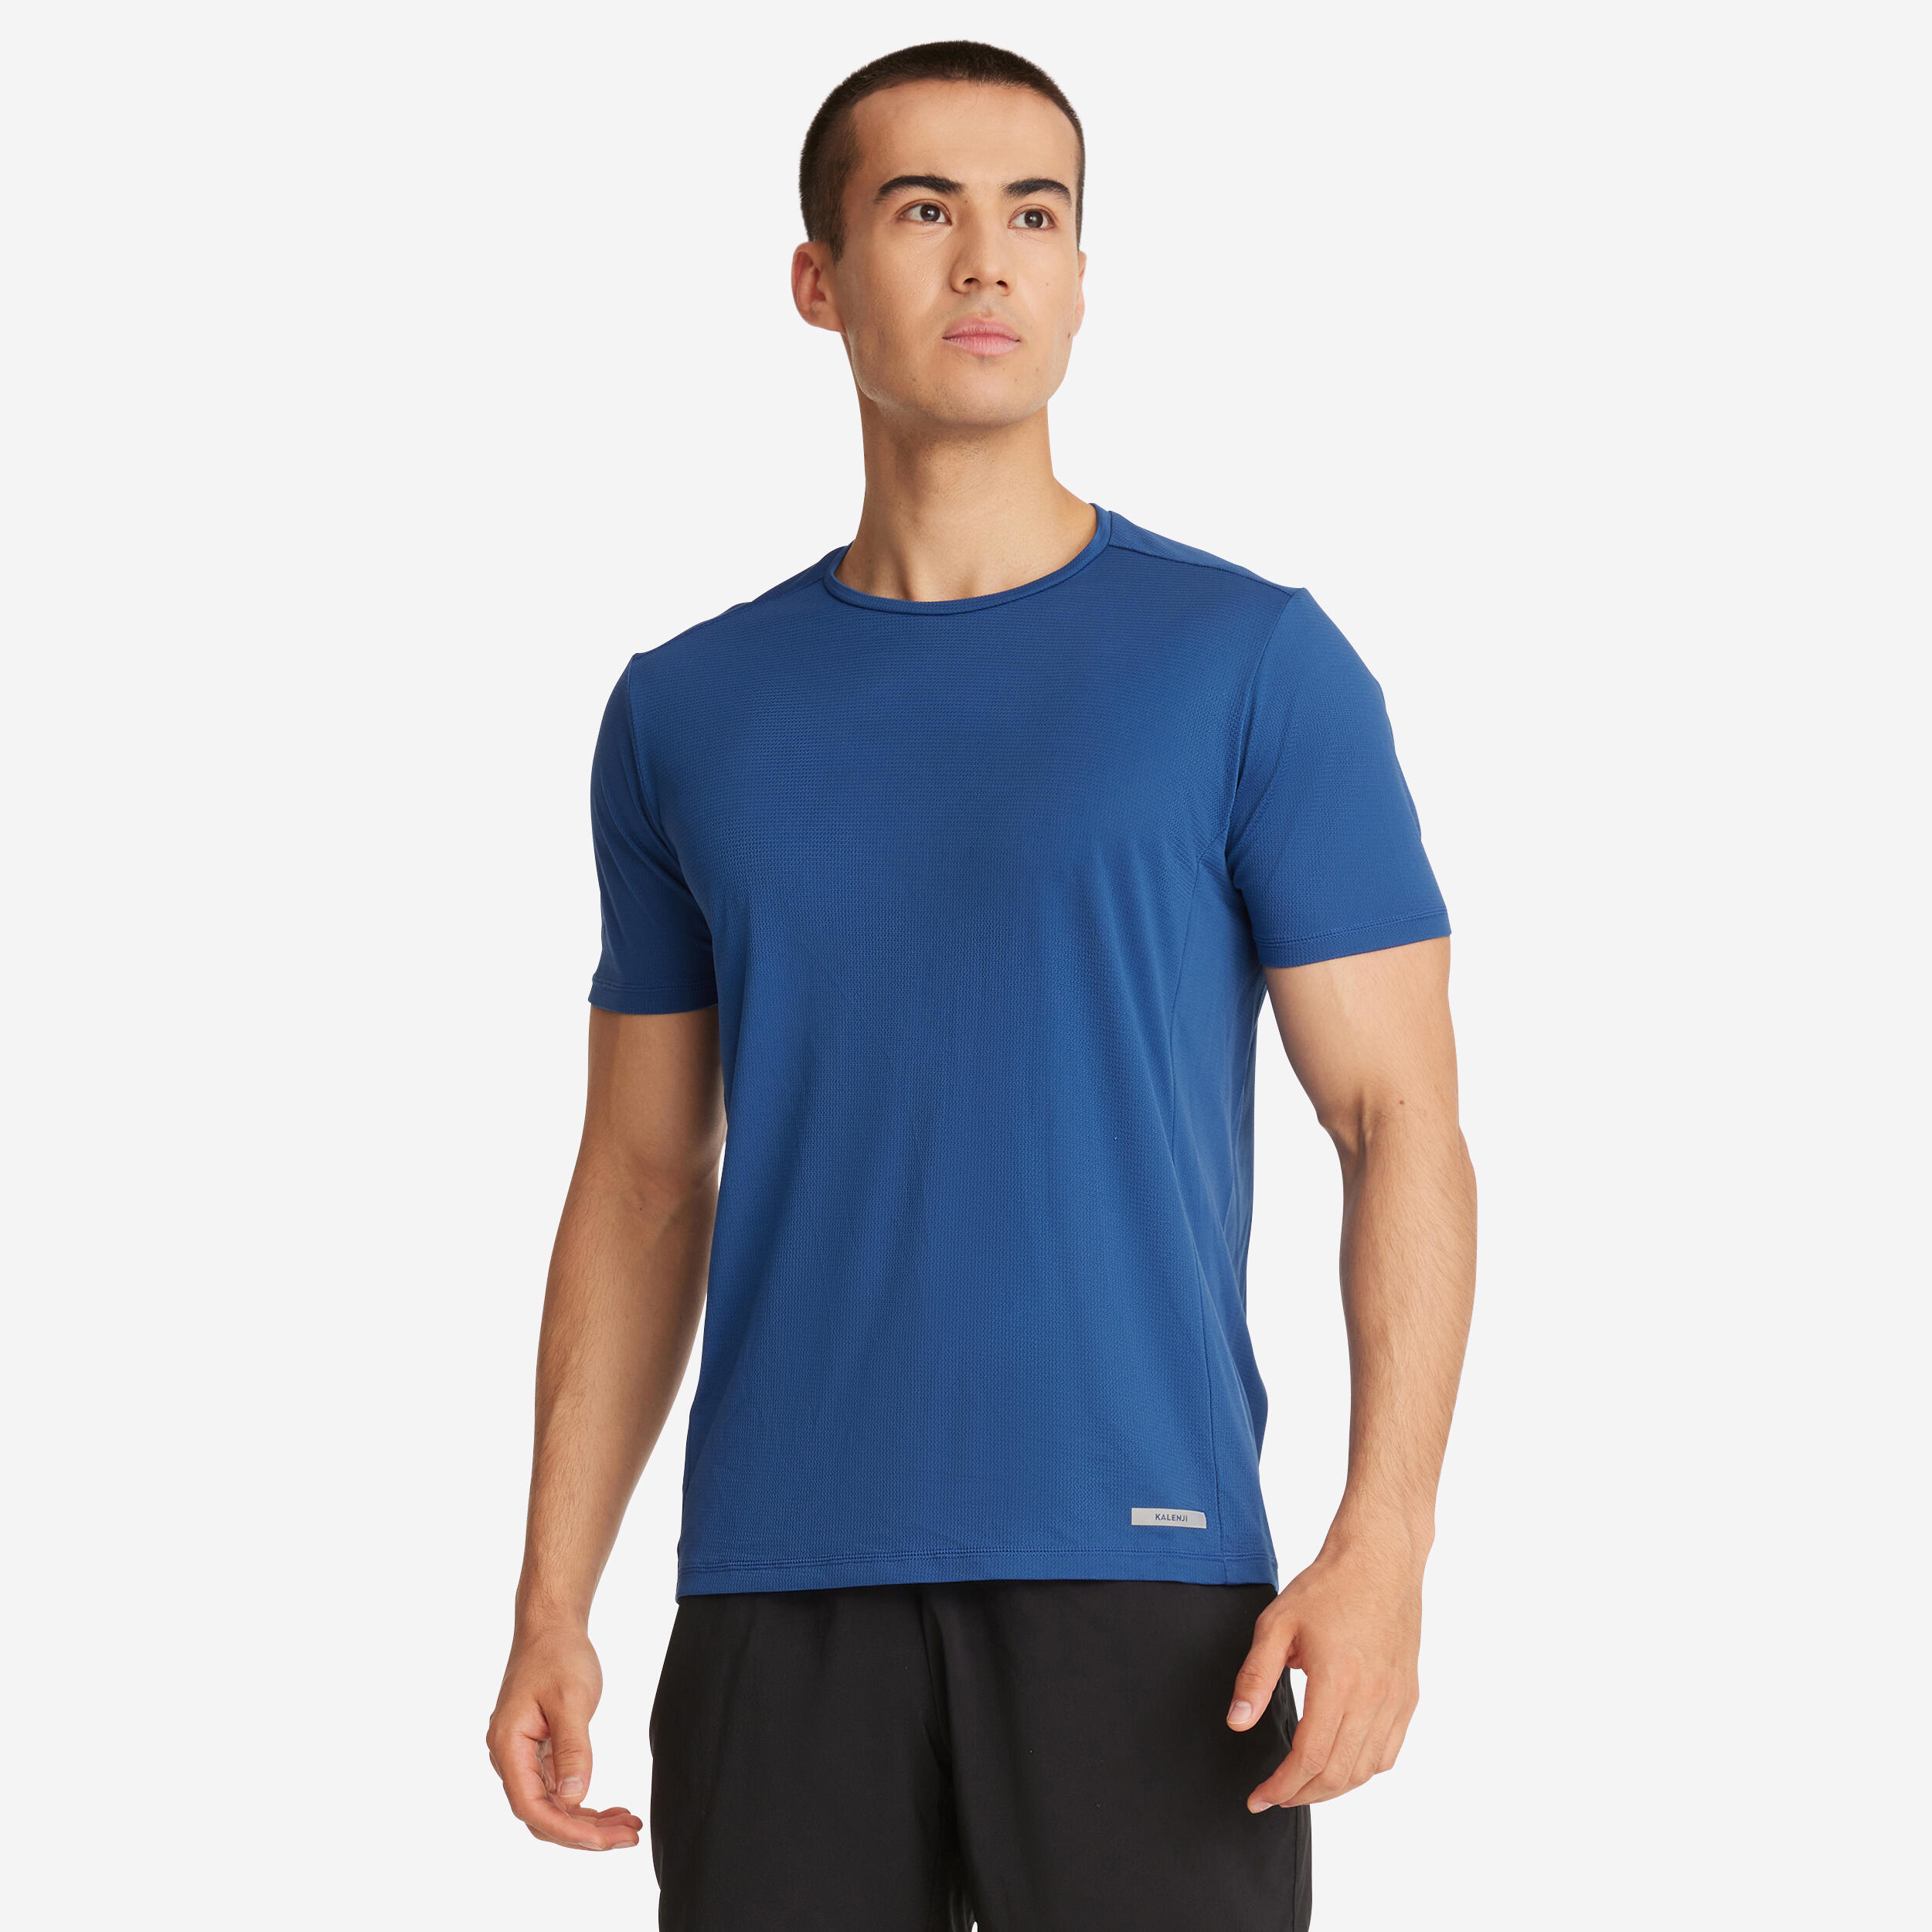 KALENJI Dry Men's Running Breathable T-shirt - Blue